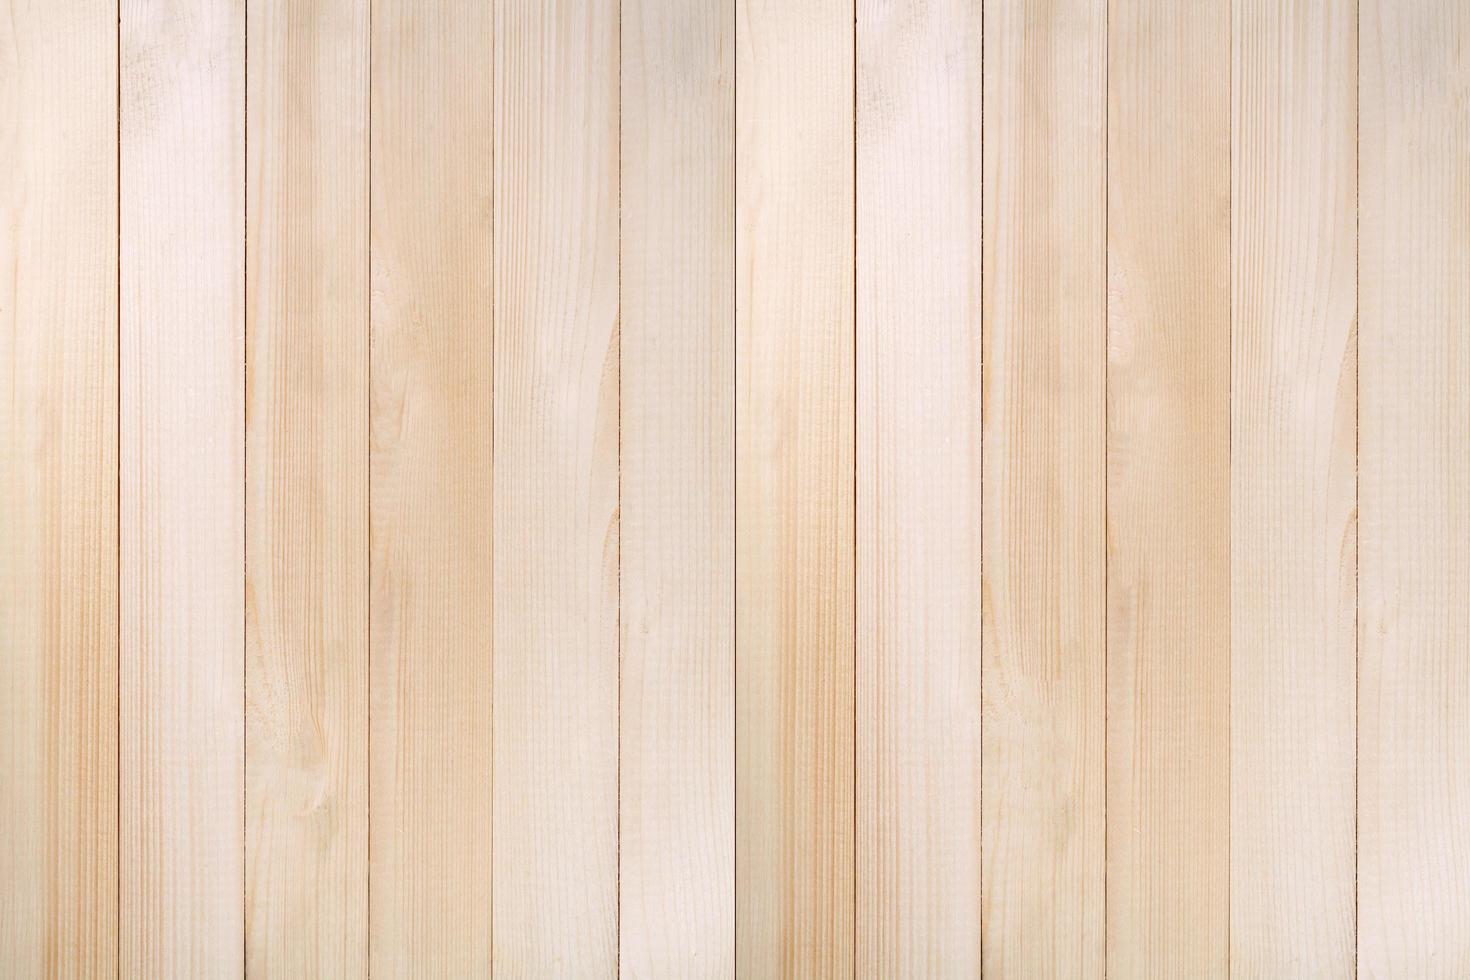 Holzplanke Textur Hintergrund foto